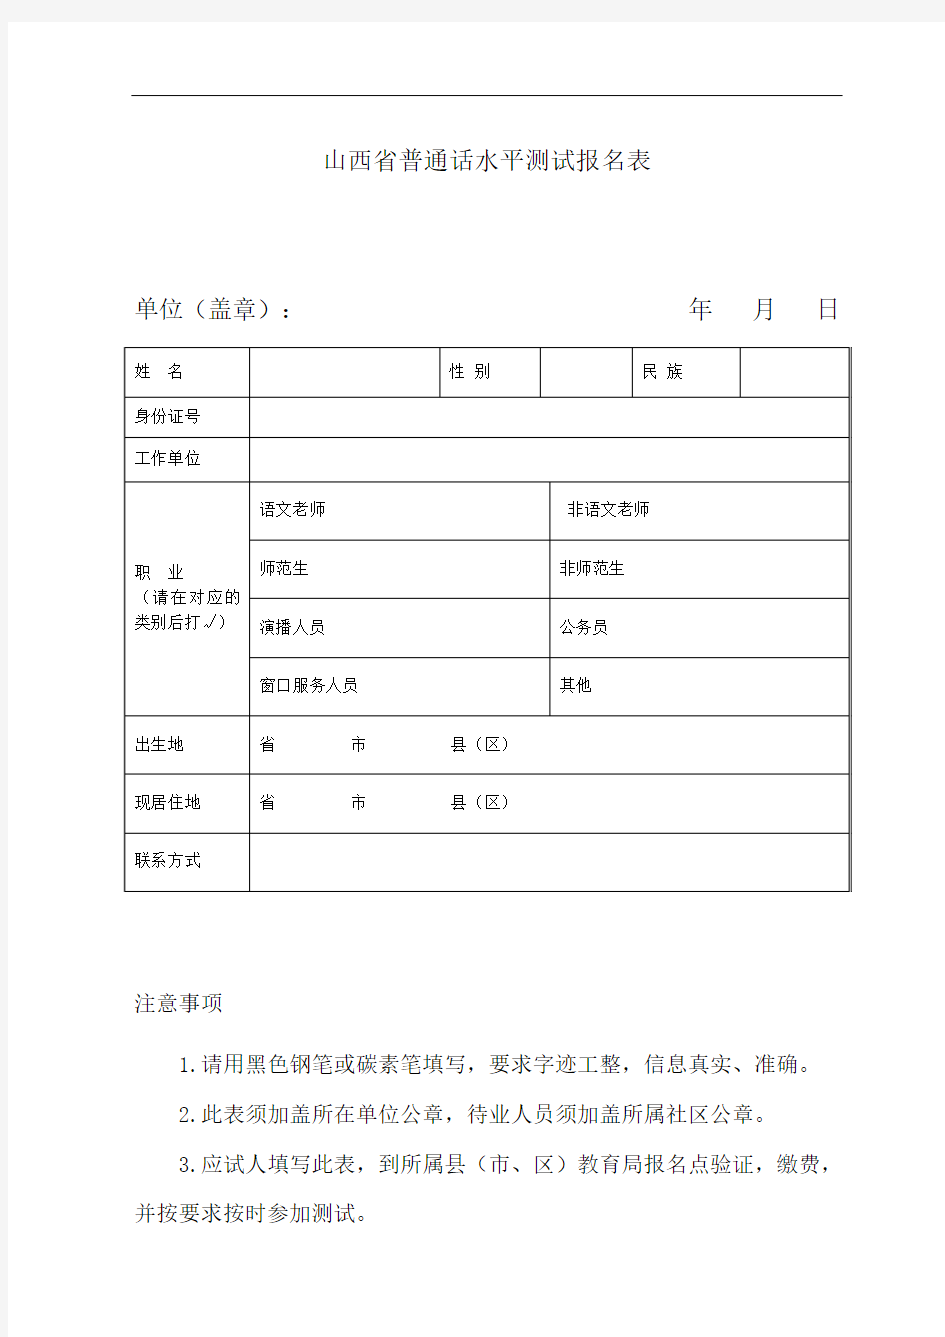 山西省普通话水平测试报名表